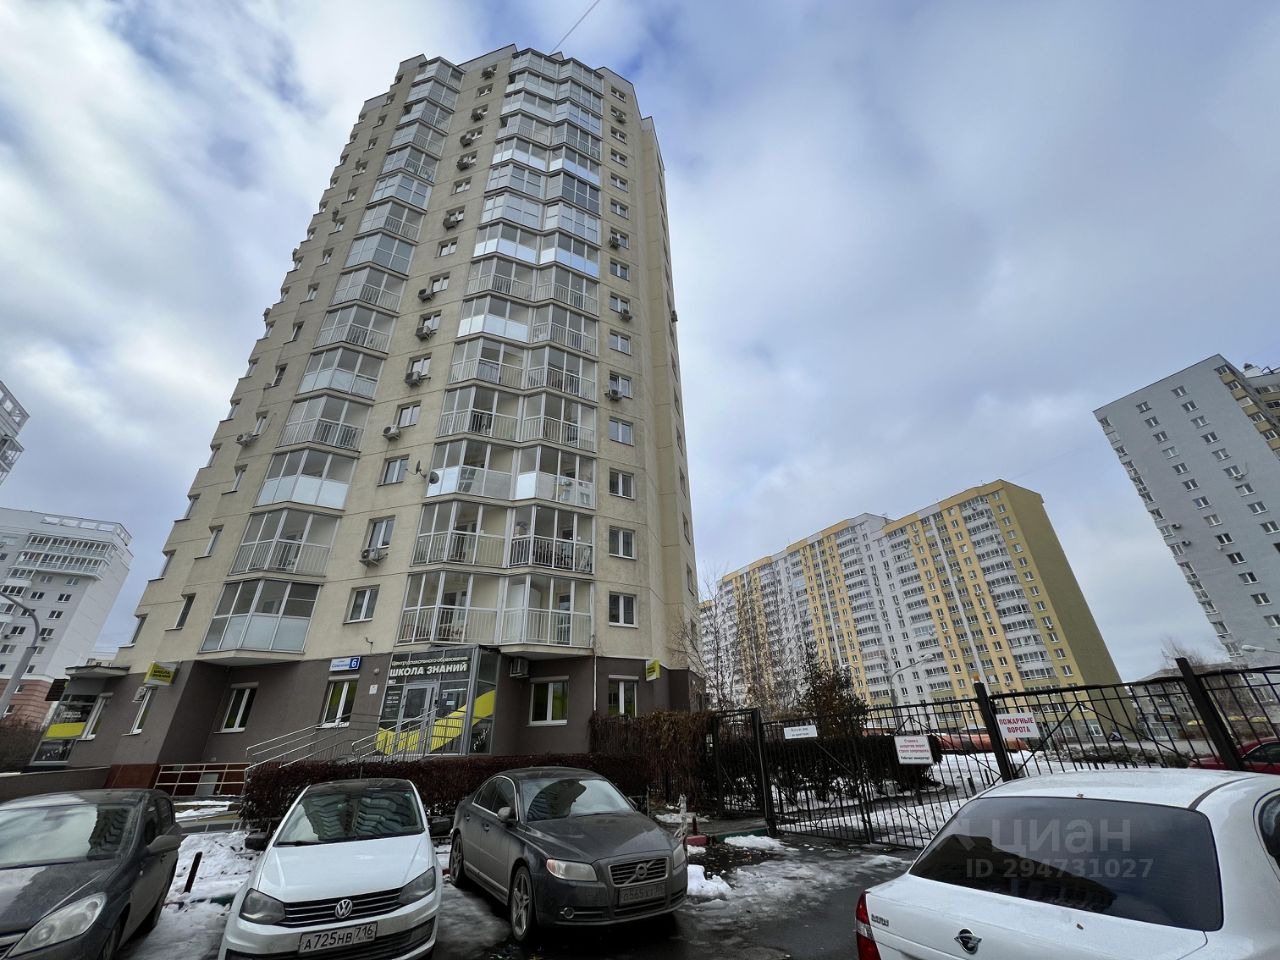 Квартира в аренду, 2 комнаты, 55 кв.м, 9 этаж, Екатеринбург. Современный дом с парковкой, удобное расположение.